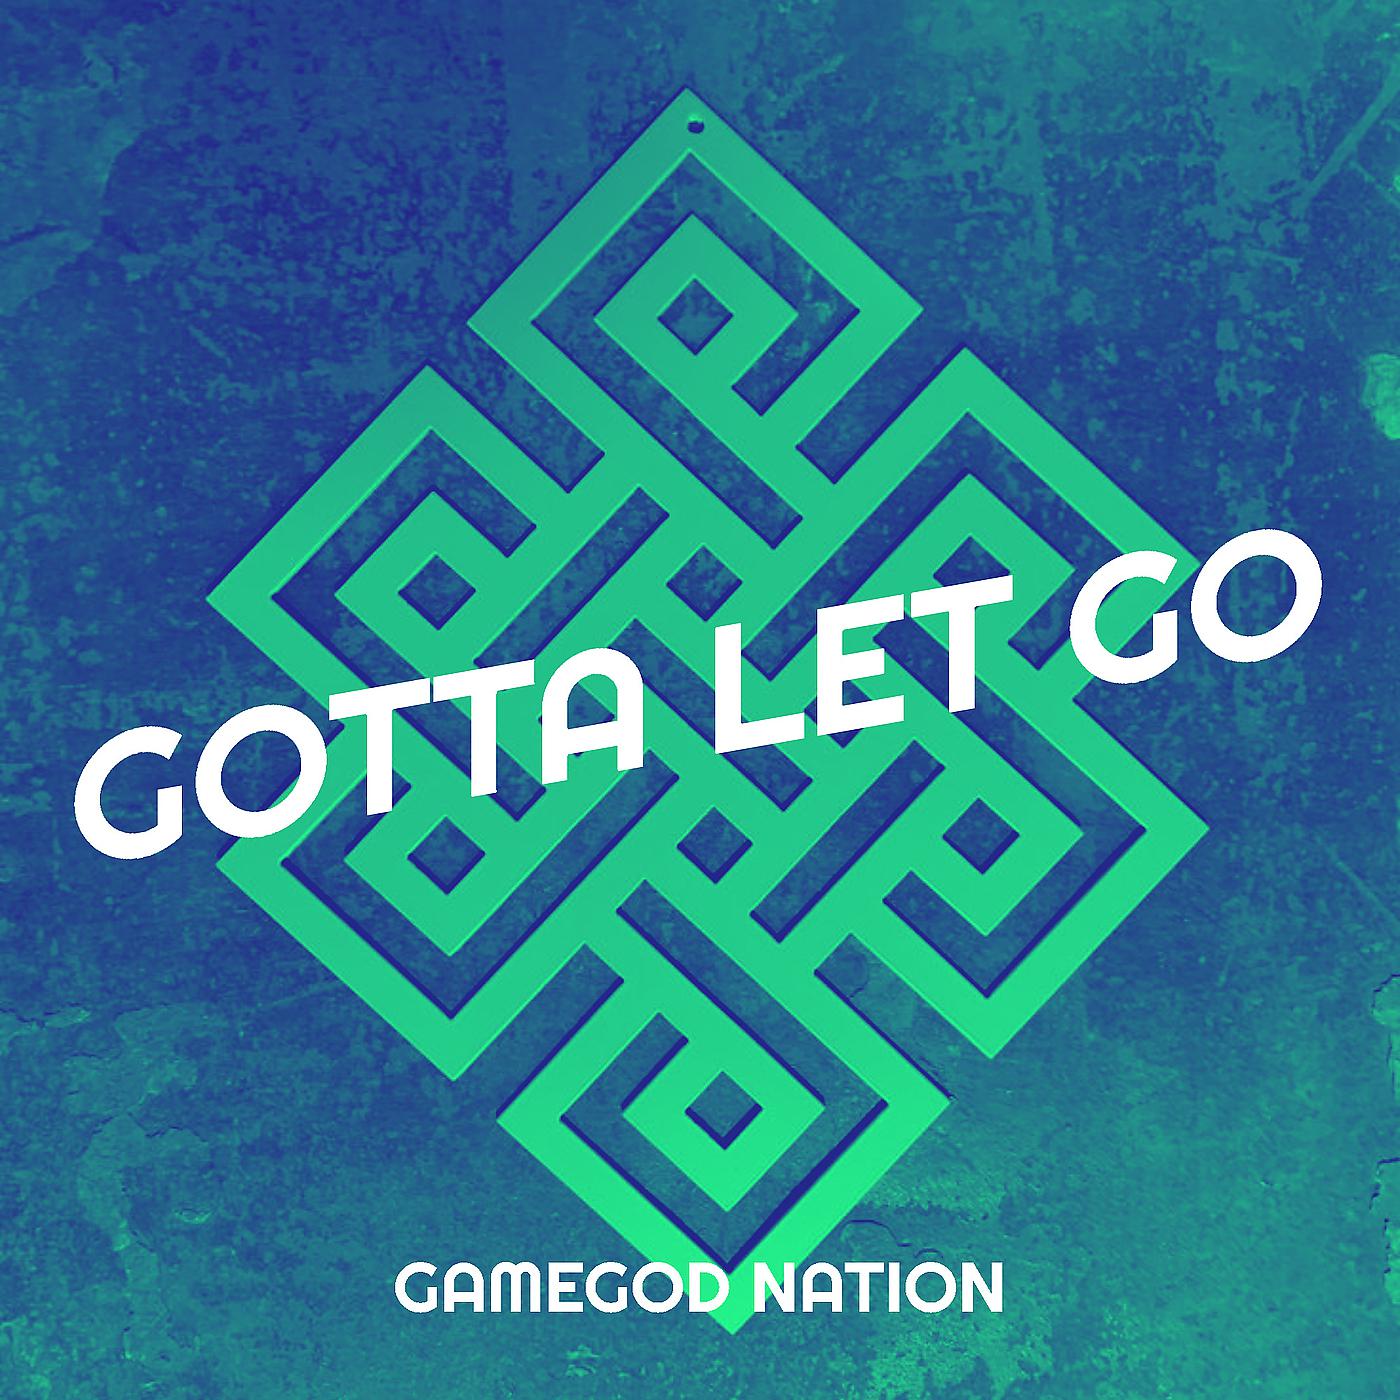 Постер альбома Gotta Let Go